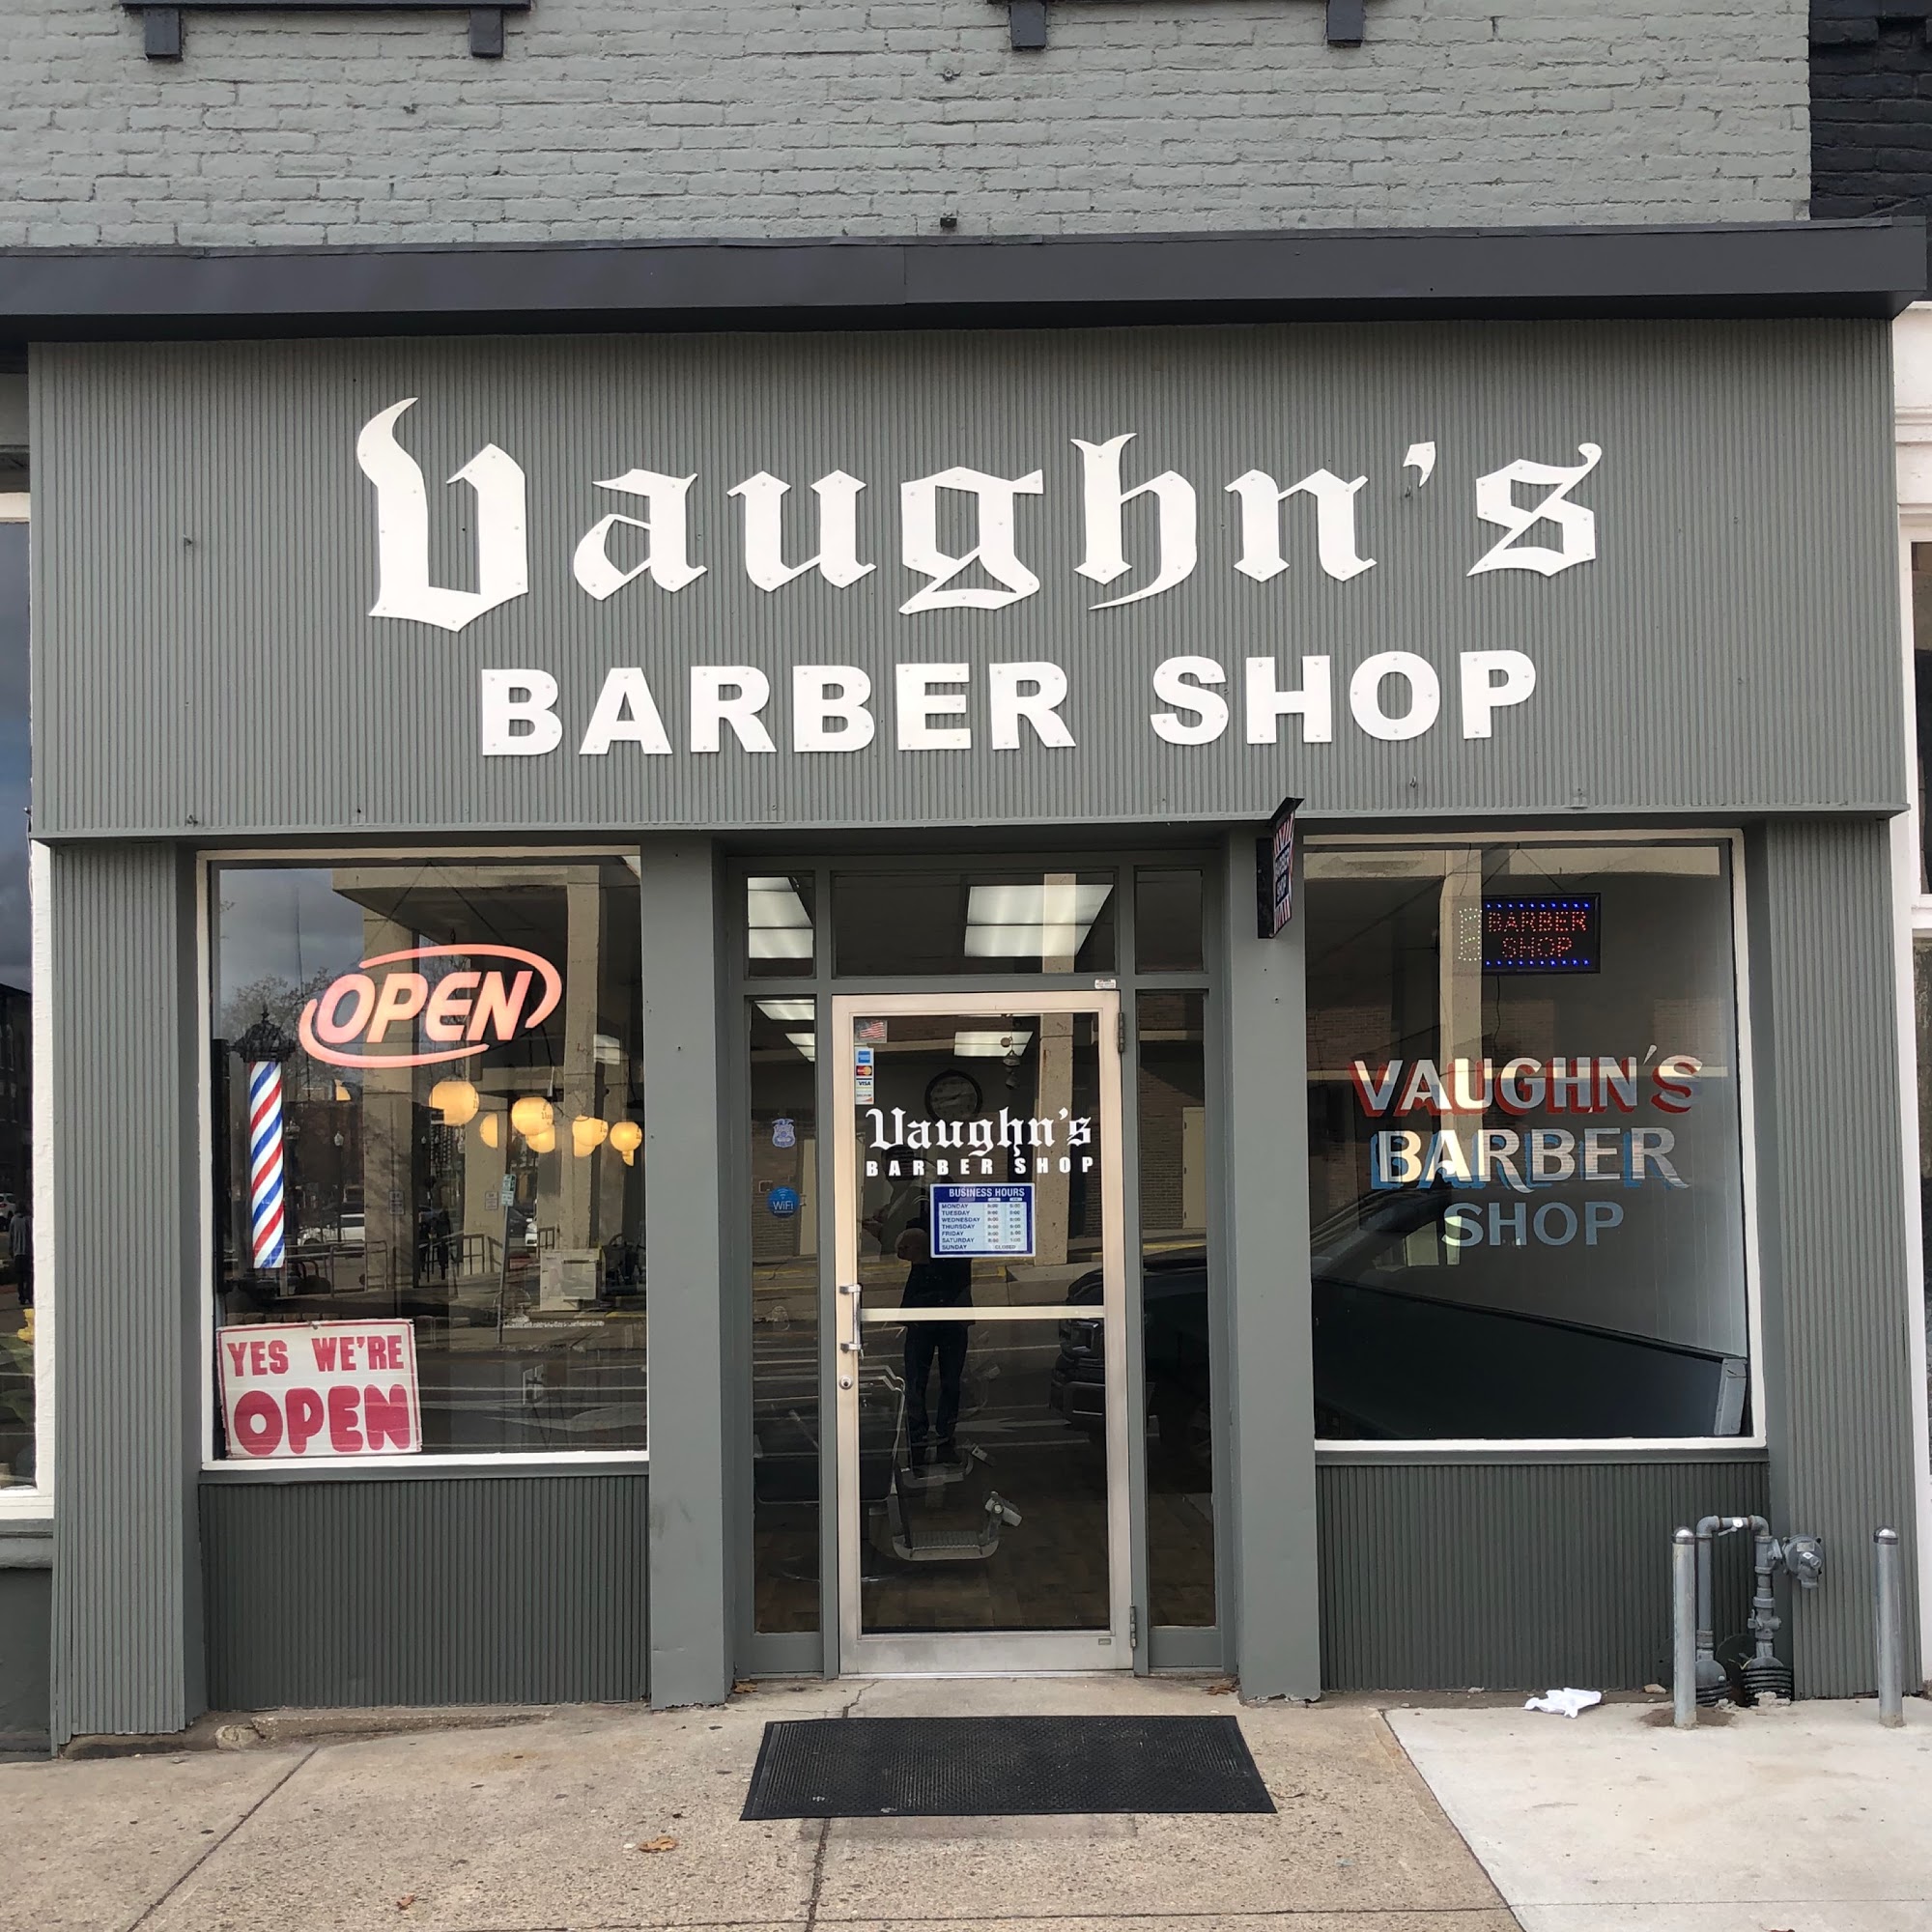 Vaughn's Barber Shop